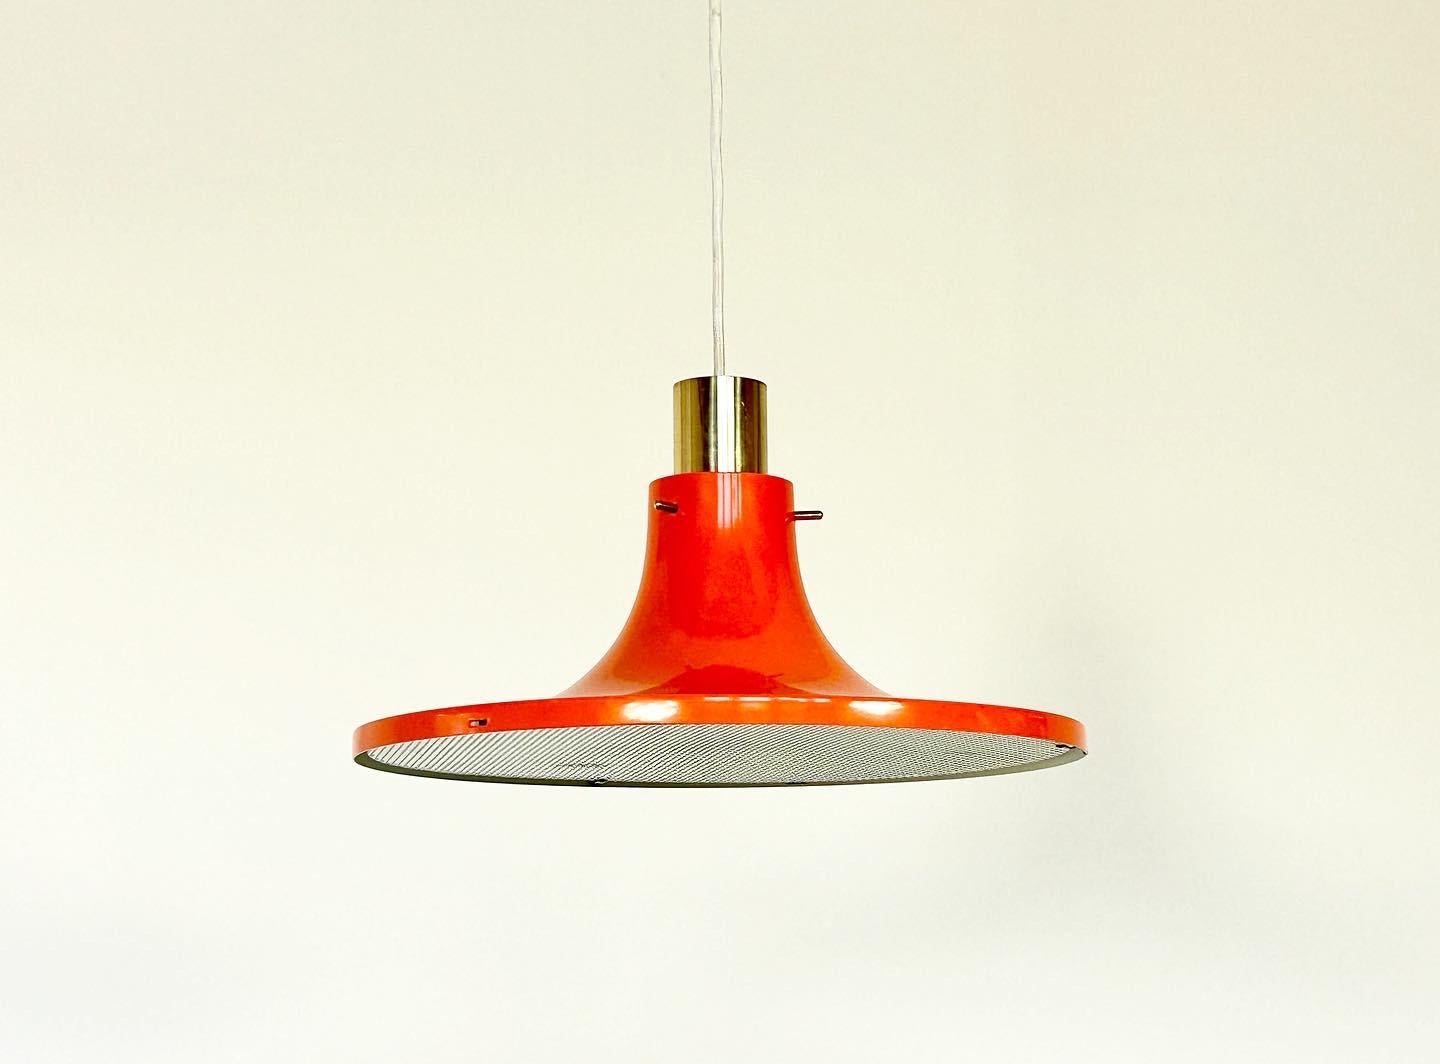 Lampe suspendue rouge-orange laquée des années 1960, conçue par Hans-Agne Agnes. 

Fabriqué en Suède par AB Markaryd, avec l'emblème du fabricant sur la face intérieure de l'écu. 

Rare lampe suspendue conçue par Hans-Agne Agnes en laiton et métal